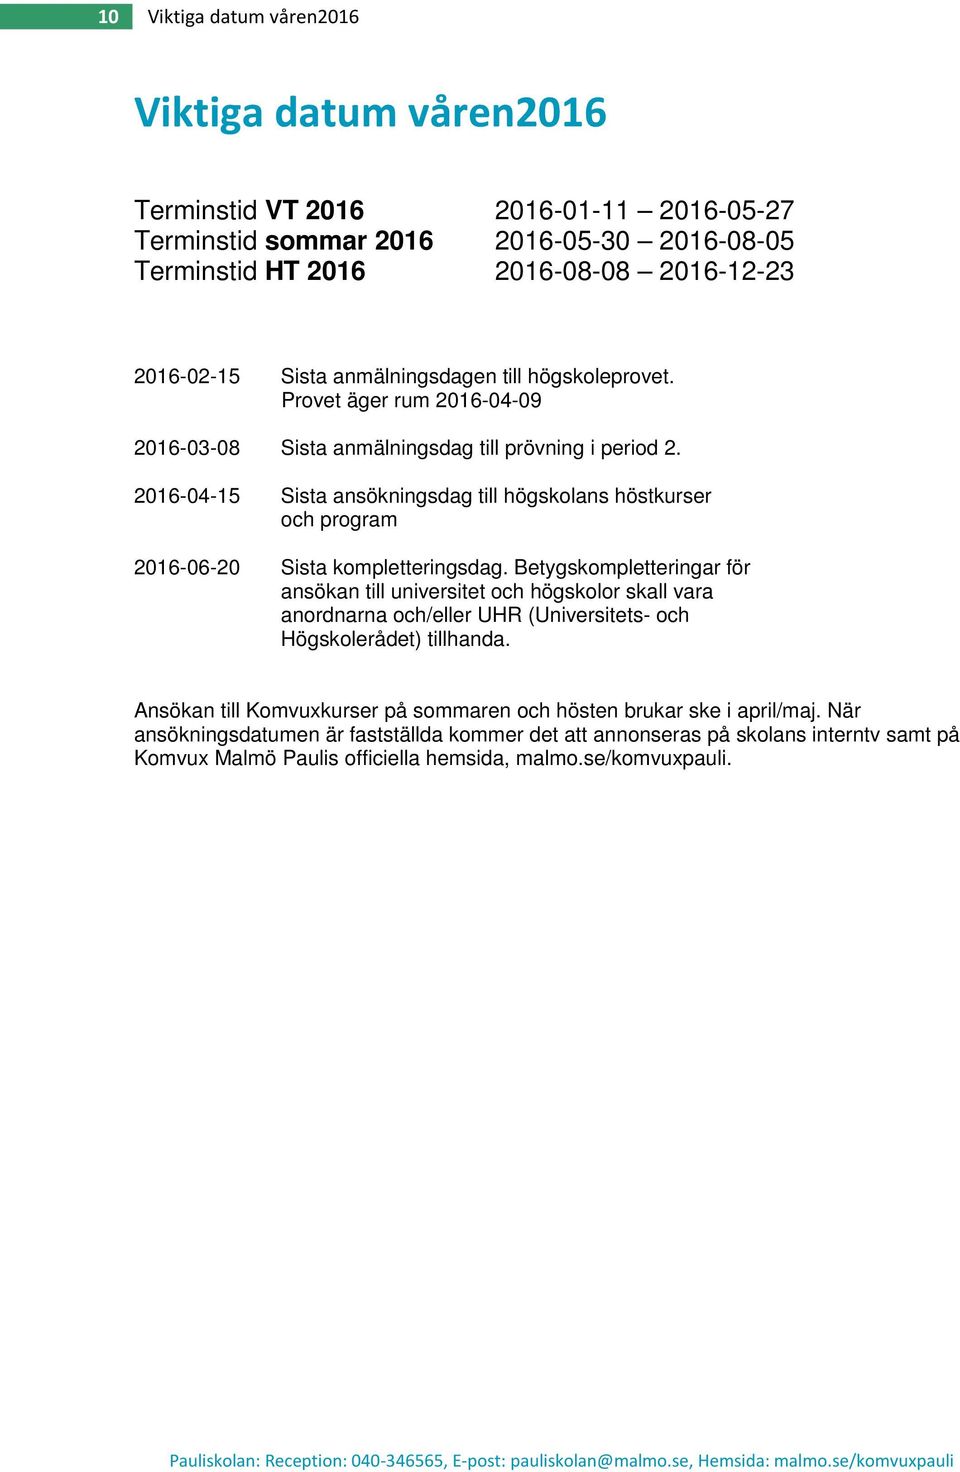 2016-04-15 Sista ansökningsdag till högskolans höstkurser och program 2016-06-20 Sista kompletteringsdag.